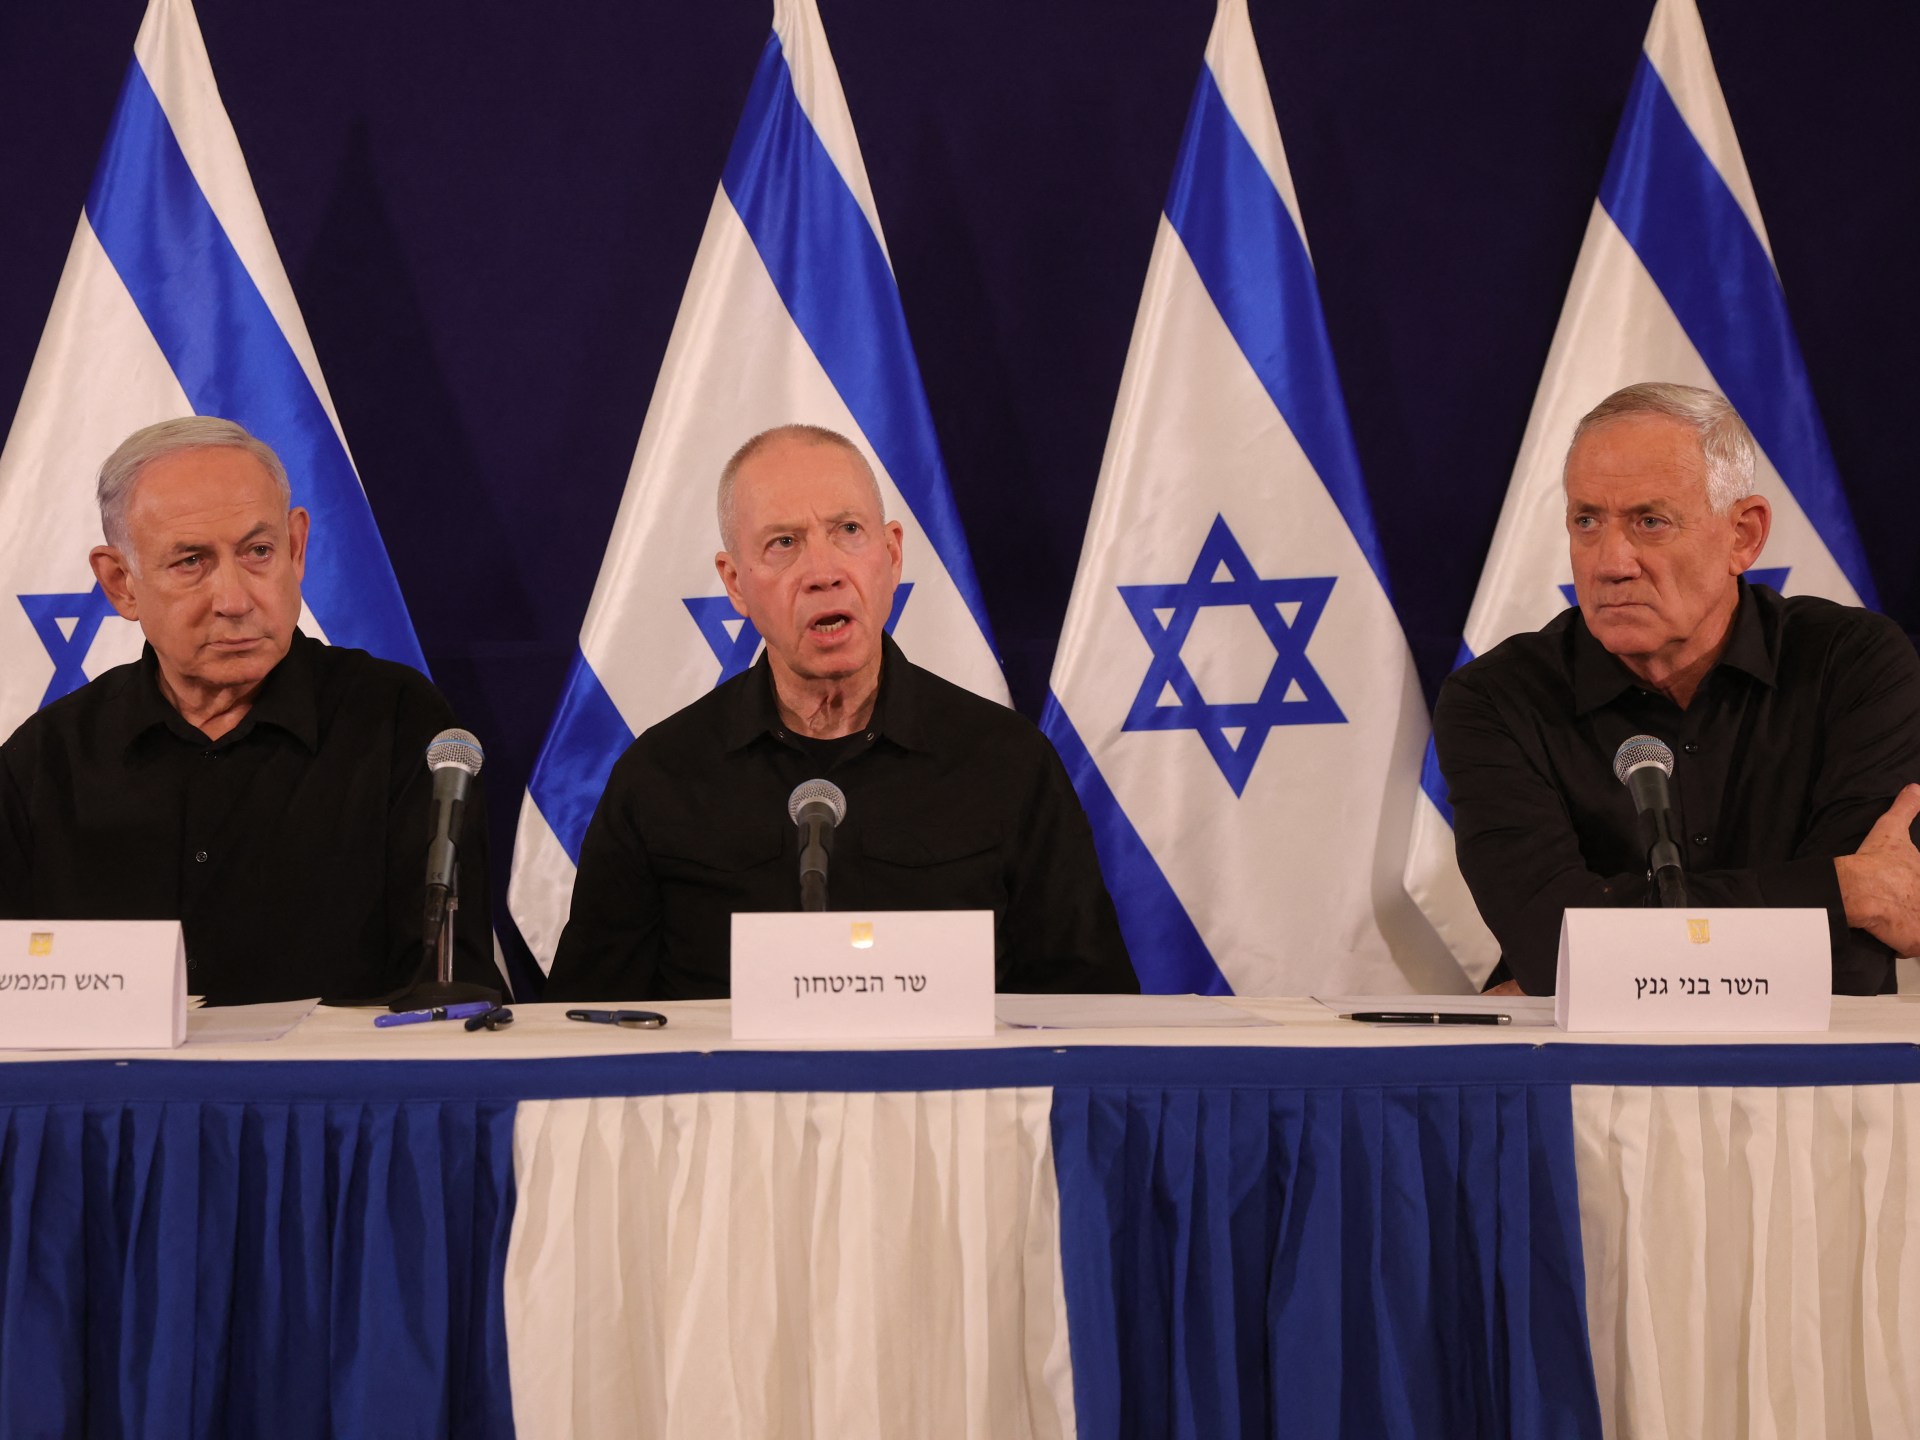 هآرتس: مجلس الحرب فقد السيطرة وقد يقود إسرائيل لحرب إقليمية | سياسة – البوكس نيوز